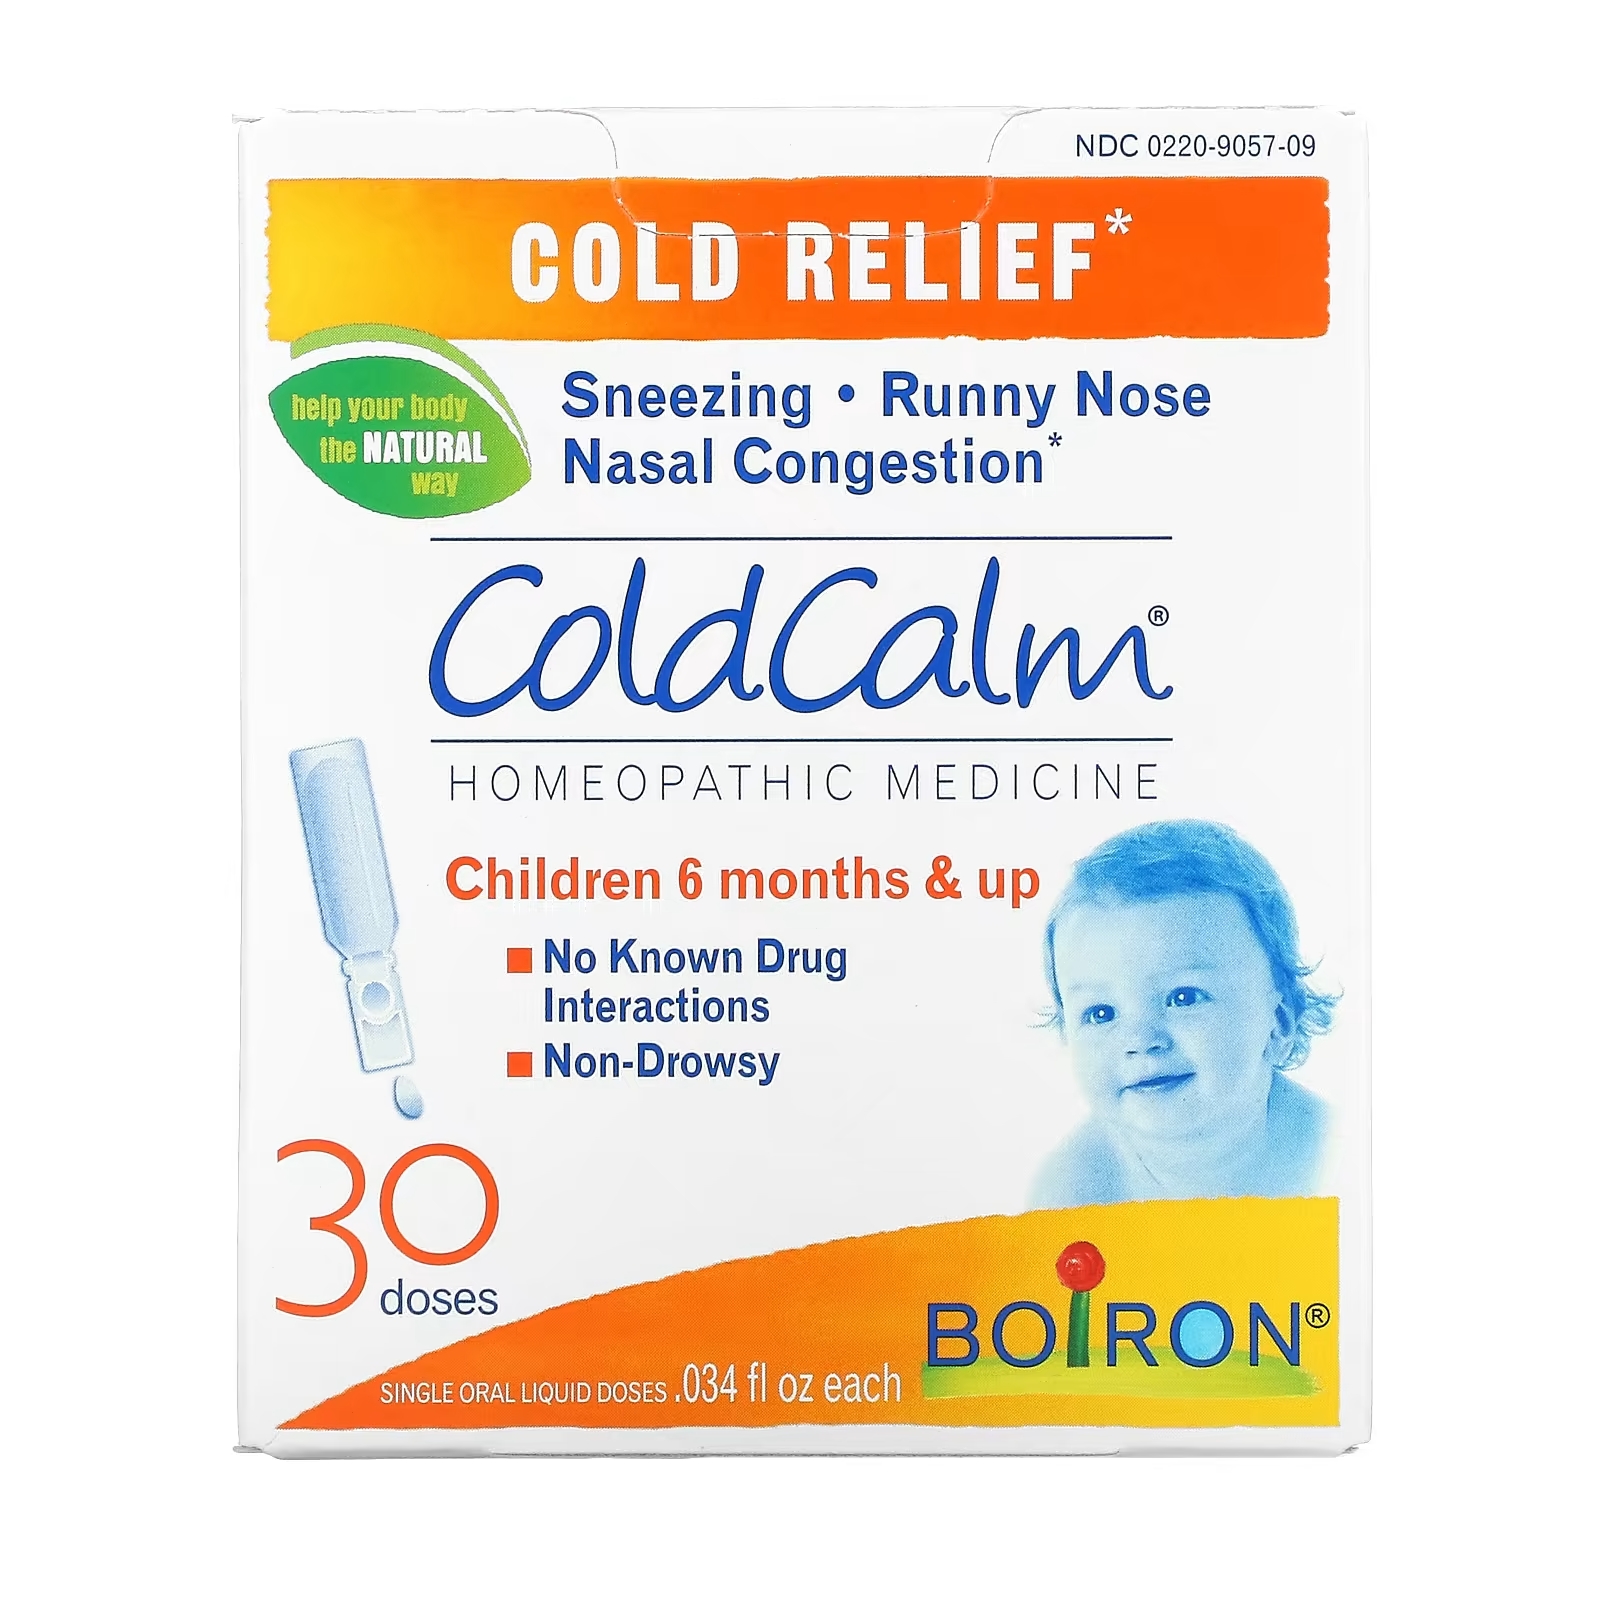 Boiron ColdCalm средство от простуды от 6 месяцев, 30шт средство hyland s от слизи и простуды для детей от 6 месяцев 2 флакона по 118 мл